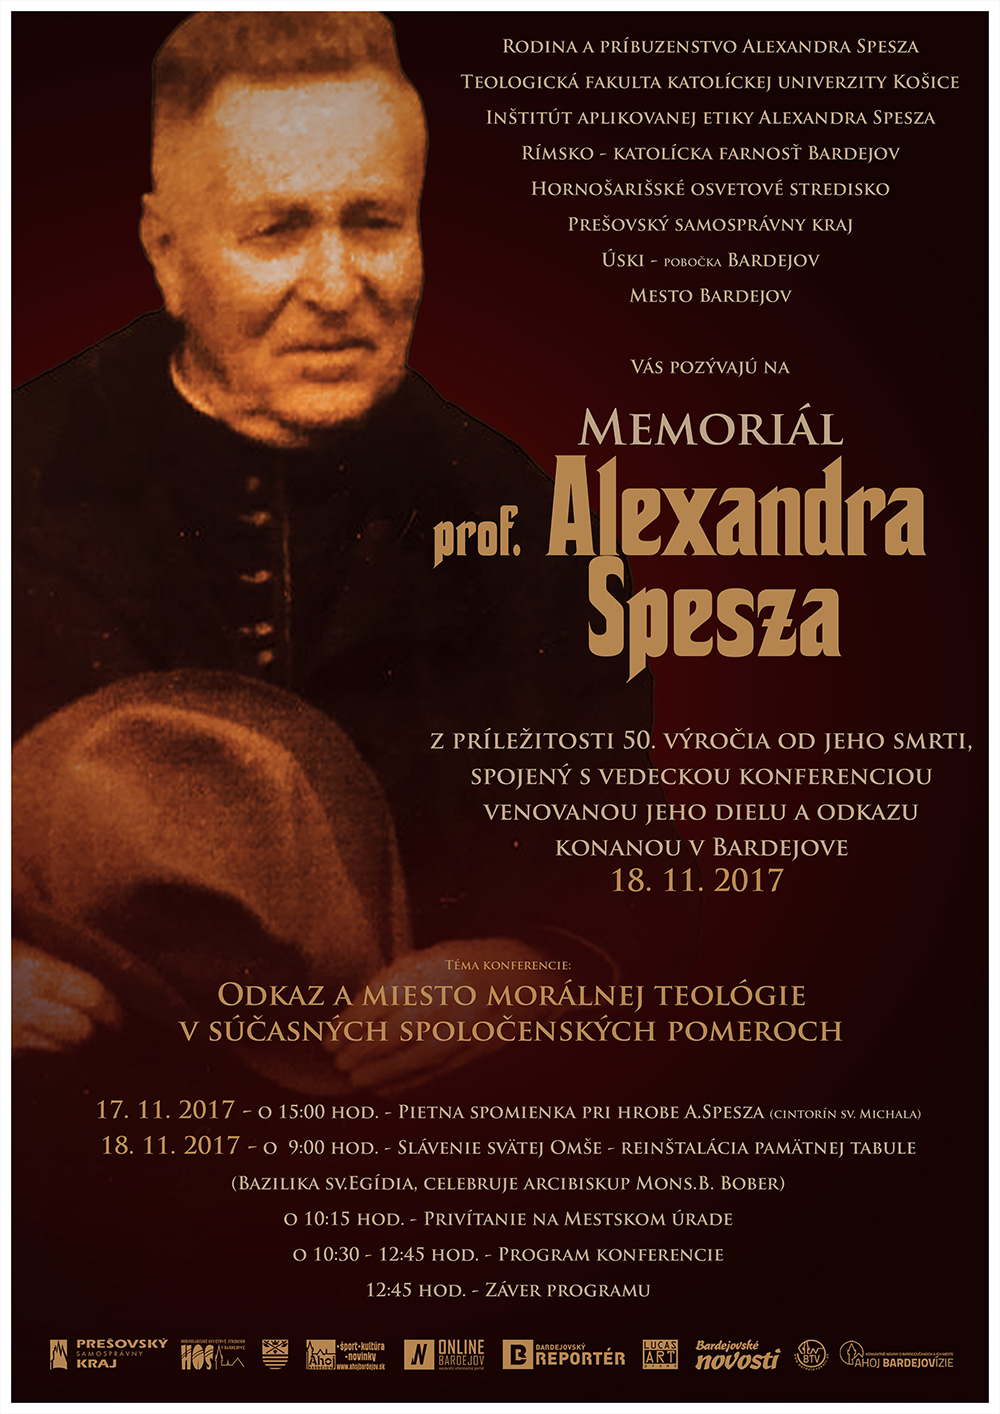 Memoriál prof. Alexandra Spesza